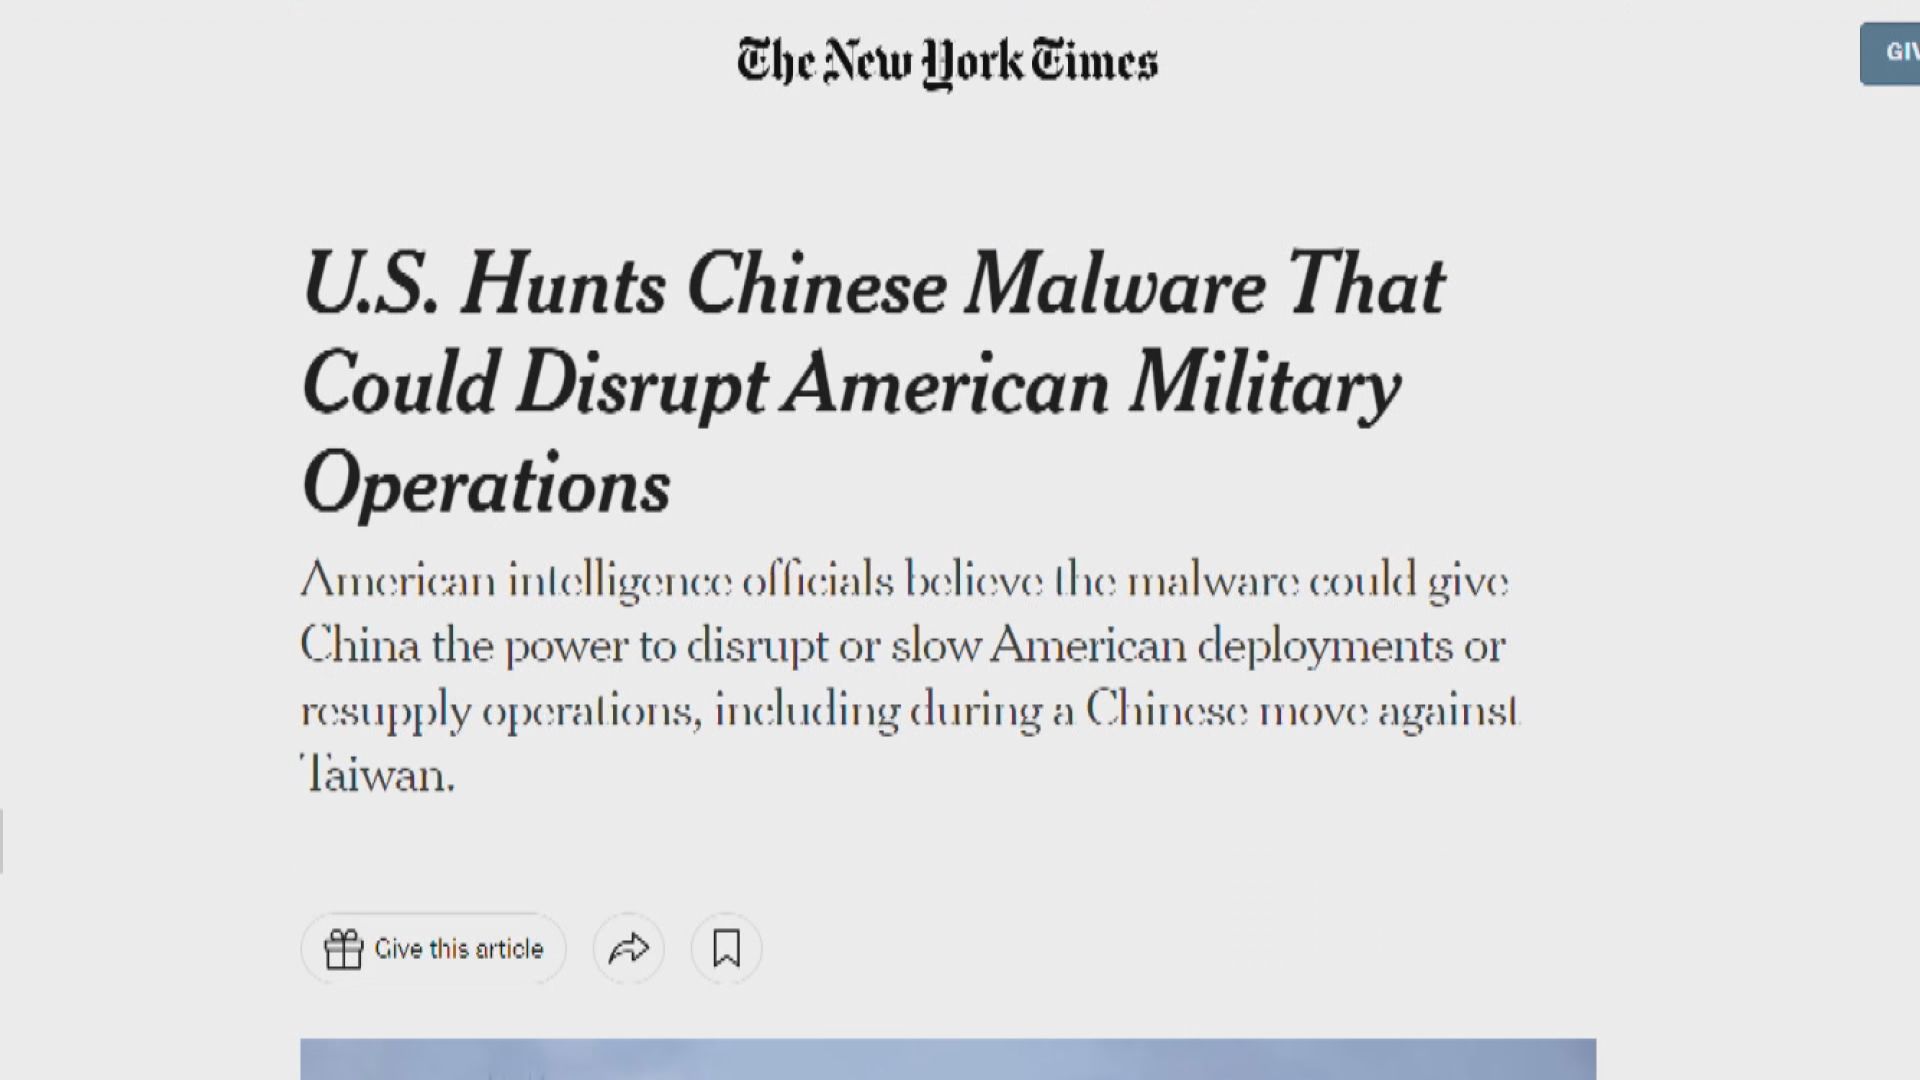 中國否認《紐時》報道在美國基建網絡植入惡意軟件 促停止無端指責